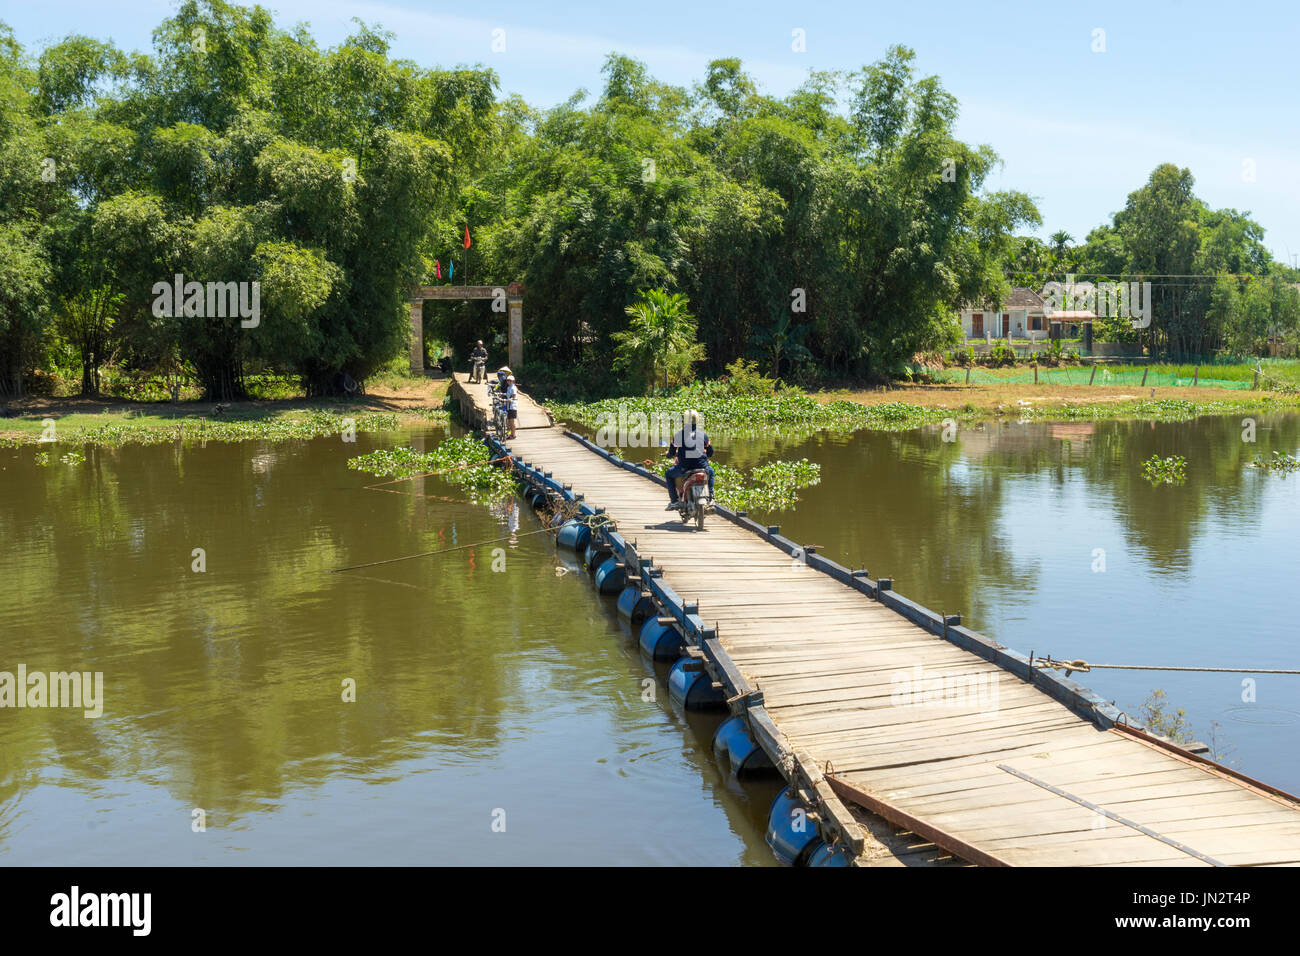 Ciclomotor caballo rústico en el puente flotante sobre el río Thu Bon en zonas rurales de Vietnam fuera de Hoi An Foto de stock